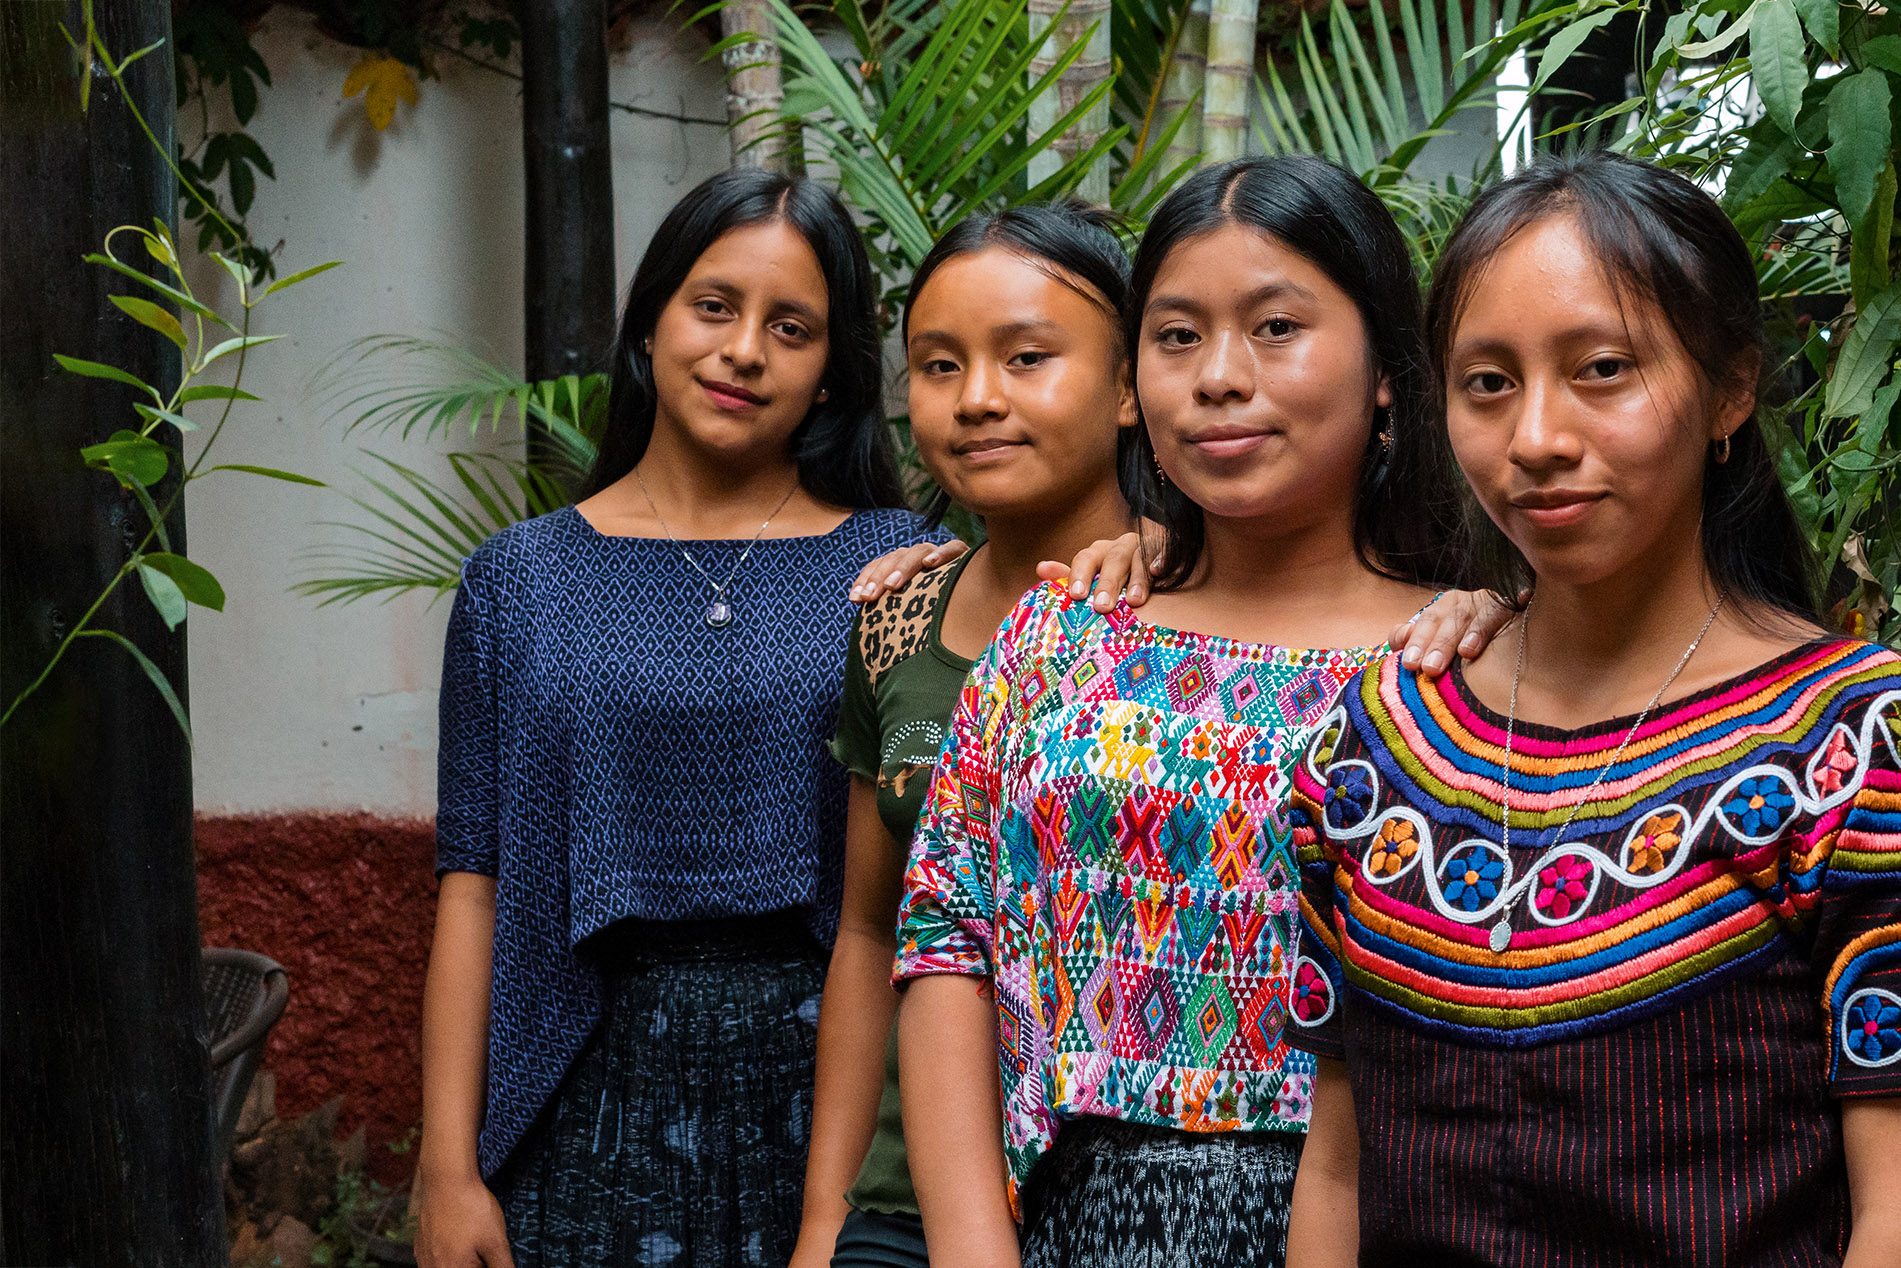 Heydi, Lesly, Yoselin y Vidália de Guatemala forman parte del movimiento de niñas en Guatemala, un espacio seguro para reflexionar sobre las causas profundas de los problemas a los que se enfrentan y proponer soluciones y acciones clave para prevenirlos y reducirlos.